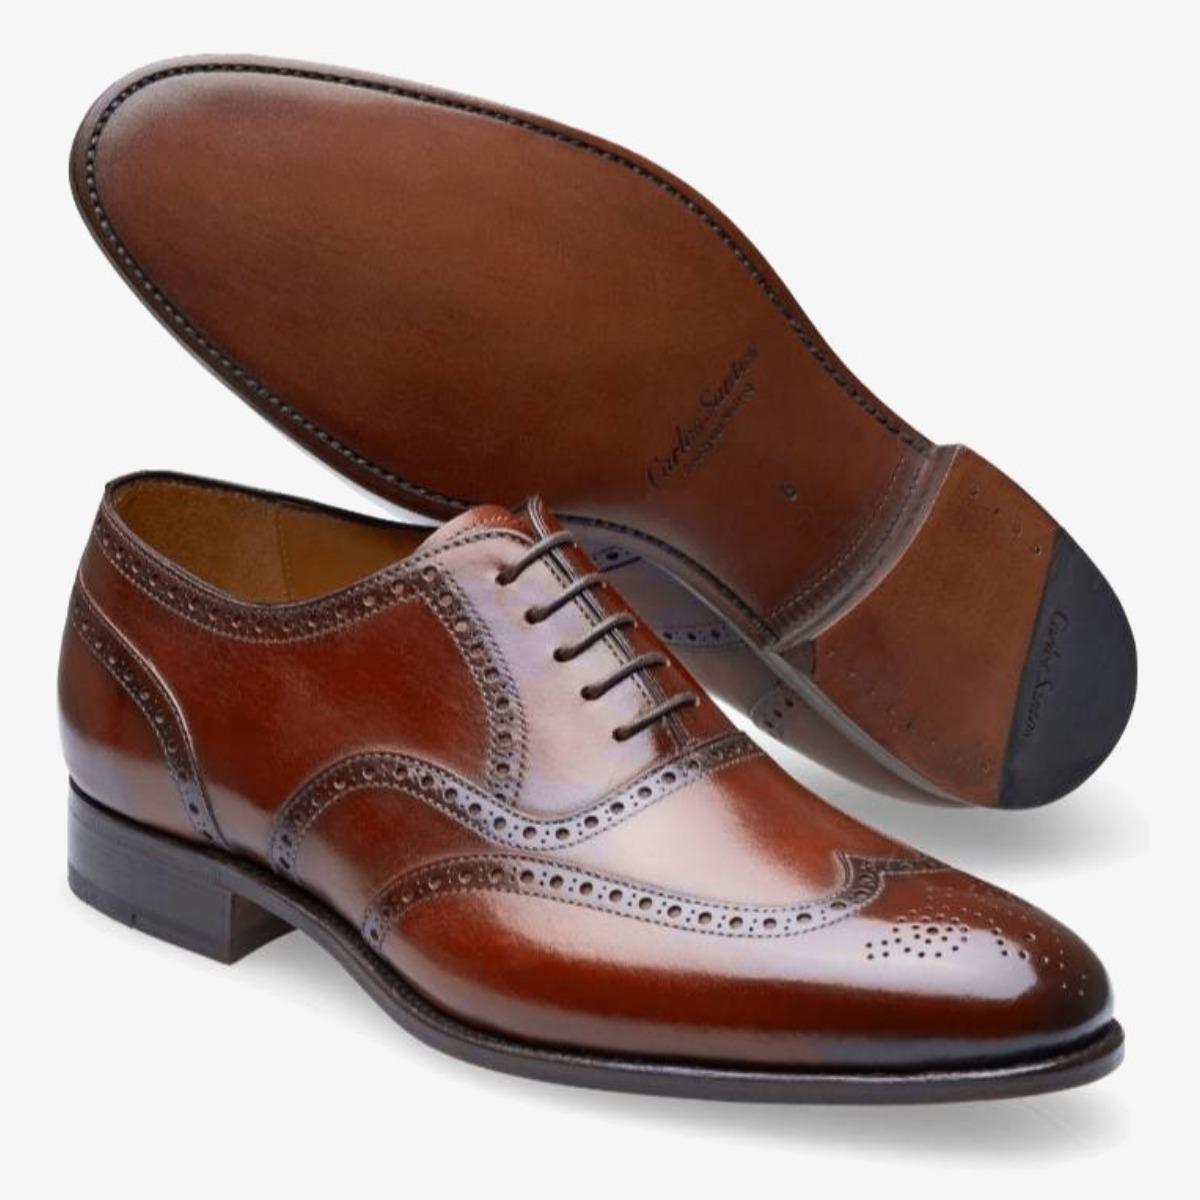 Carlos Santos 7273 Frank burgundy brogue men's oxford shoes